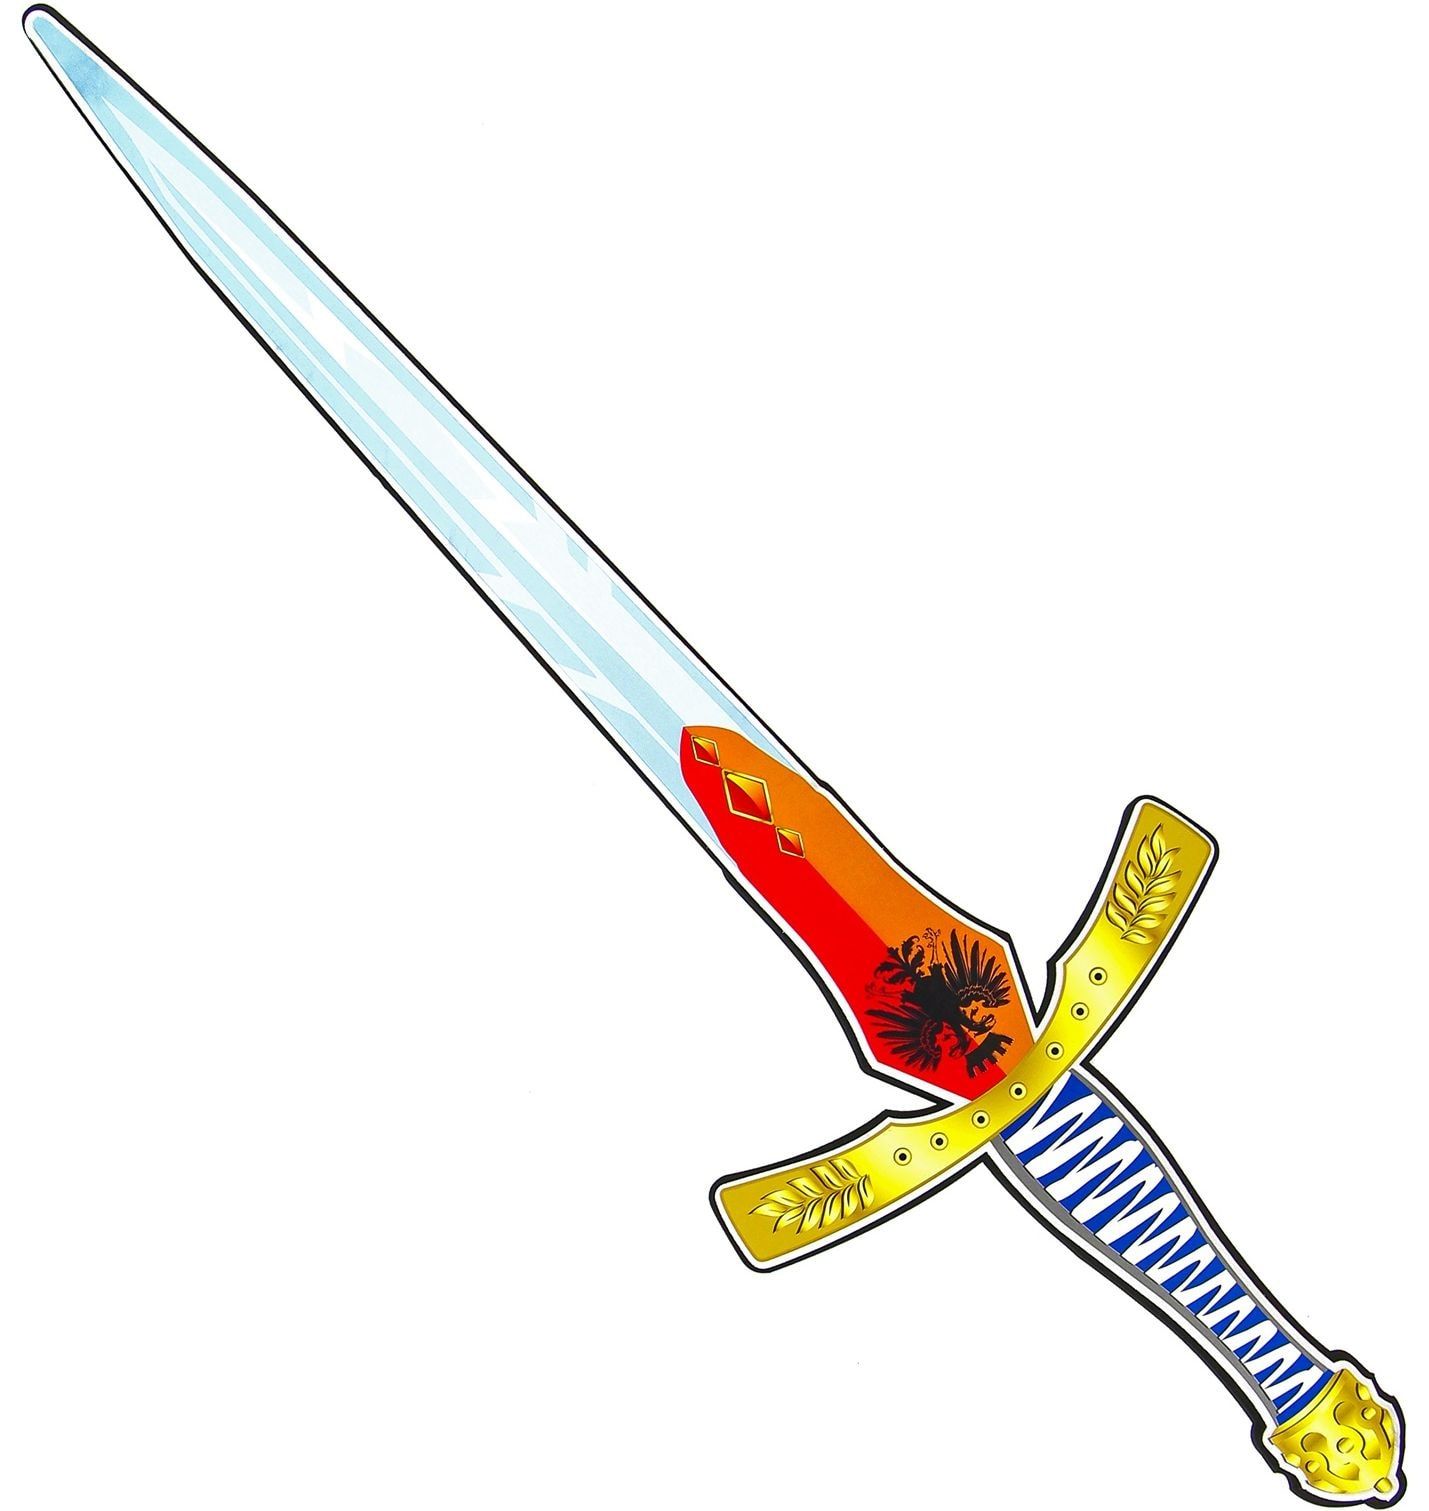 Lange ridder foam zwaard